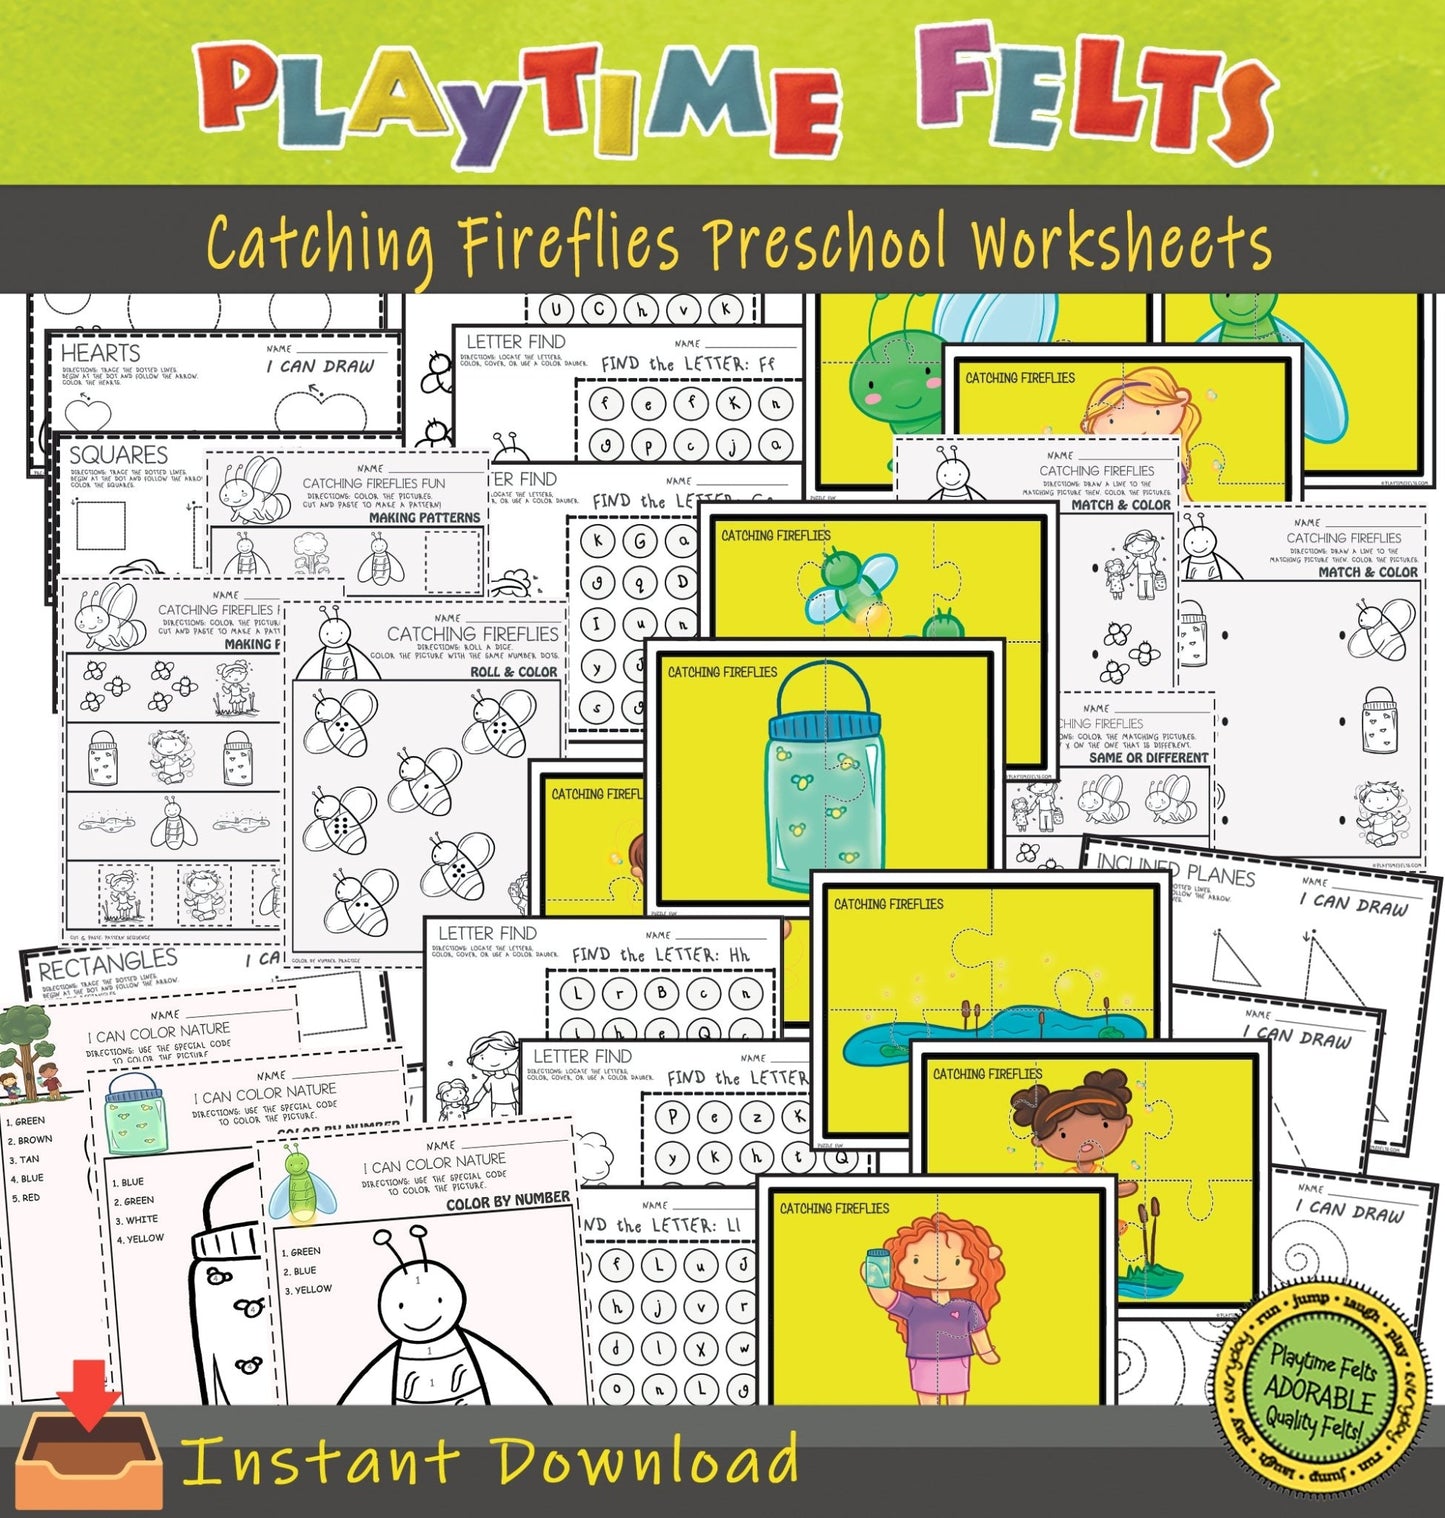 Catching Fireflies Preschool Printable Worksheets INSTANT 📥 Download - Preschool Activity Sheets Playtime Felts